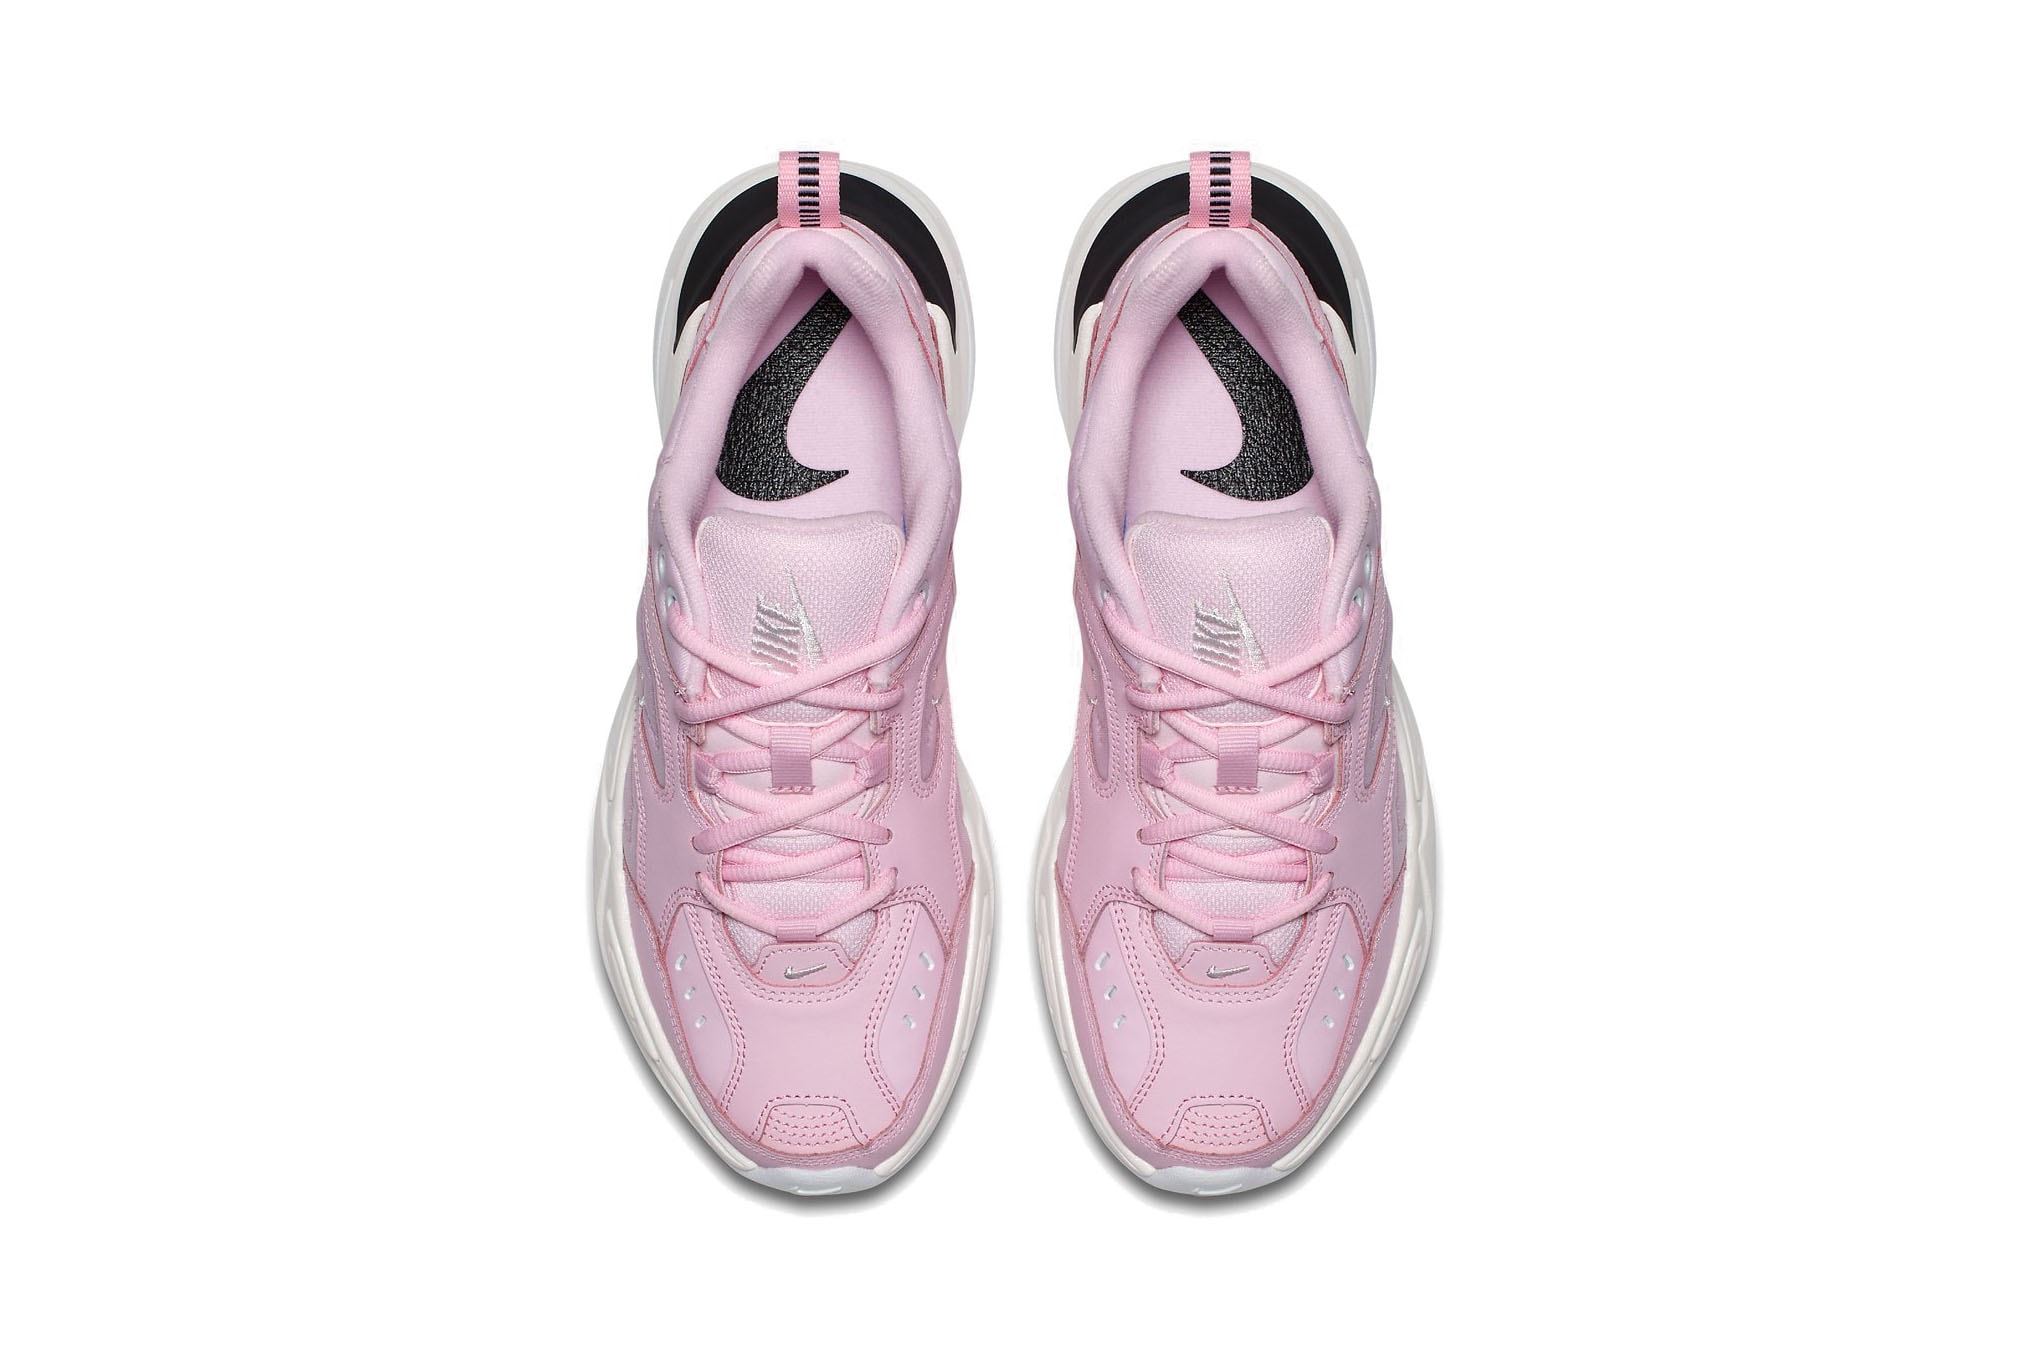 Nike's M2K Tekno Chunky Sneaker Arrives in Pink Spring Colorway Dad Shoe Footwear Trainer